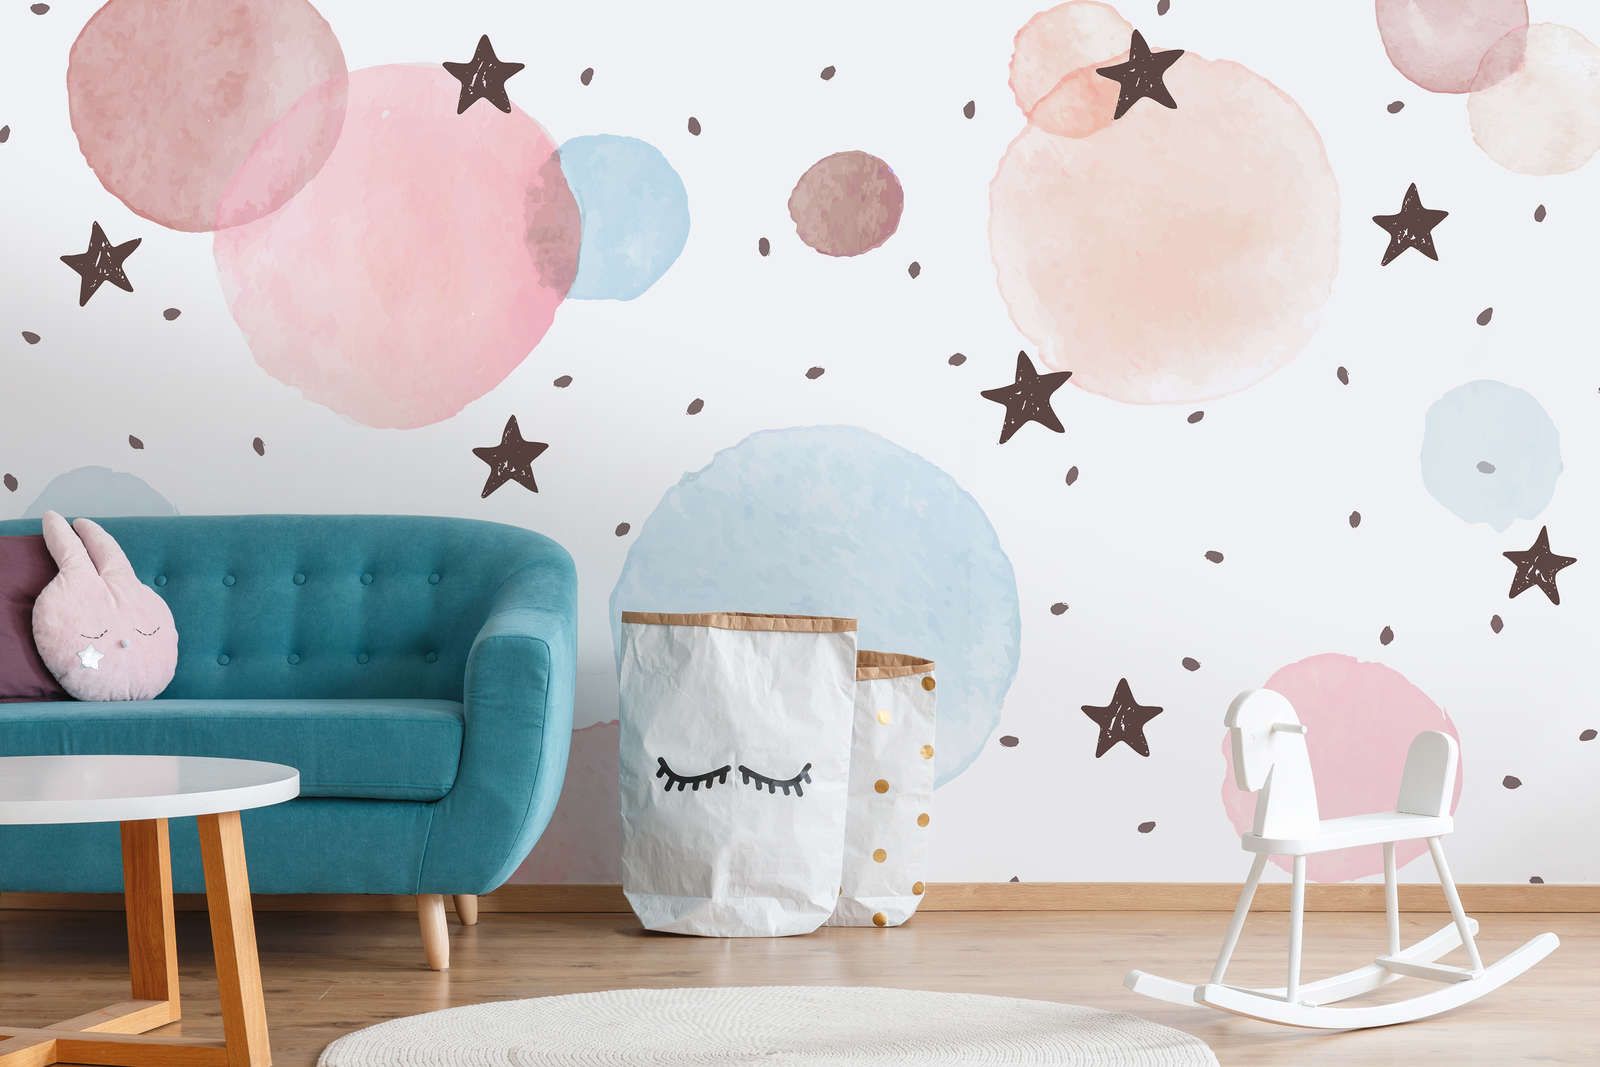             papier peint en papier pour chambre d'enfant avec étoiles, pois et cercles - intissé lisse & nacré
        